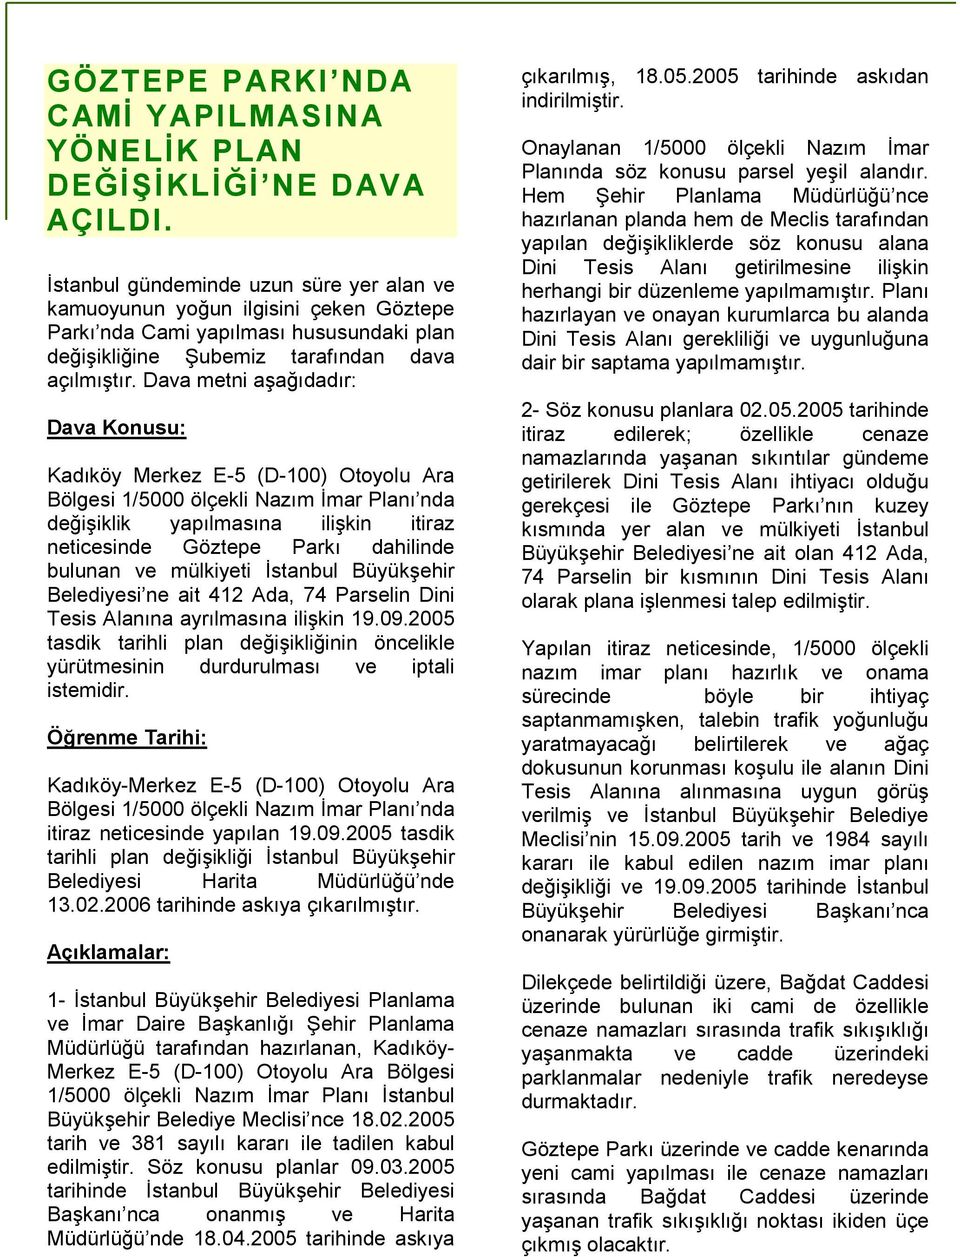 Dava metni aşağıdadır: Dava Konusu: Kadıköy Merkez E-5 (D-100) Otoyolu Ara Bölgesi 1/5000 ölçekli Nazım İmar Planı nda değişiklik yapılmasına ilişkin itiraz neticesinde Göztepe Parkı dahilinde